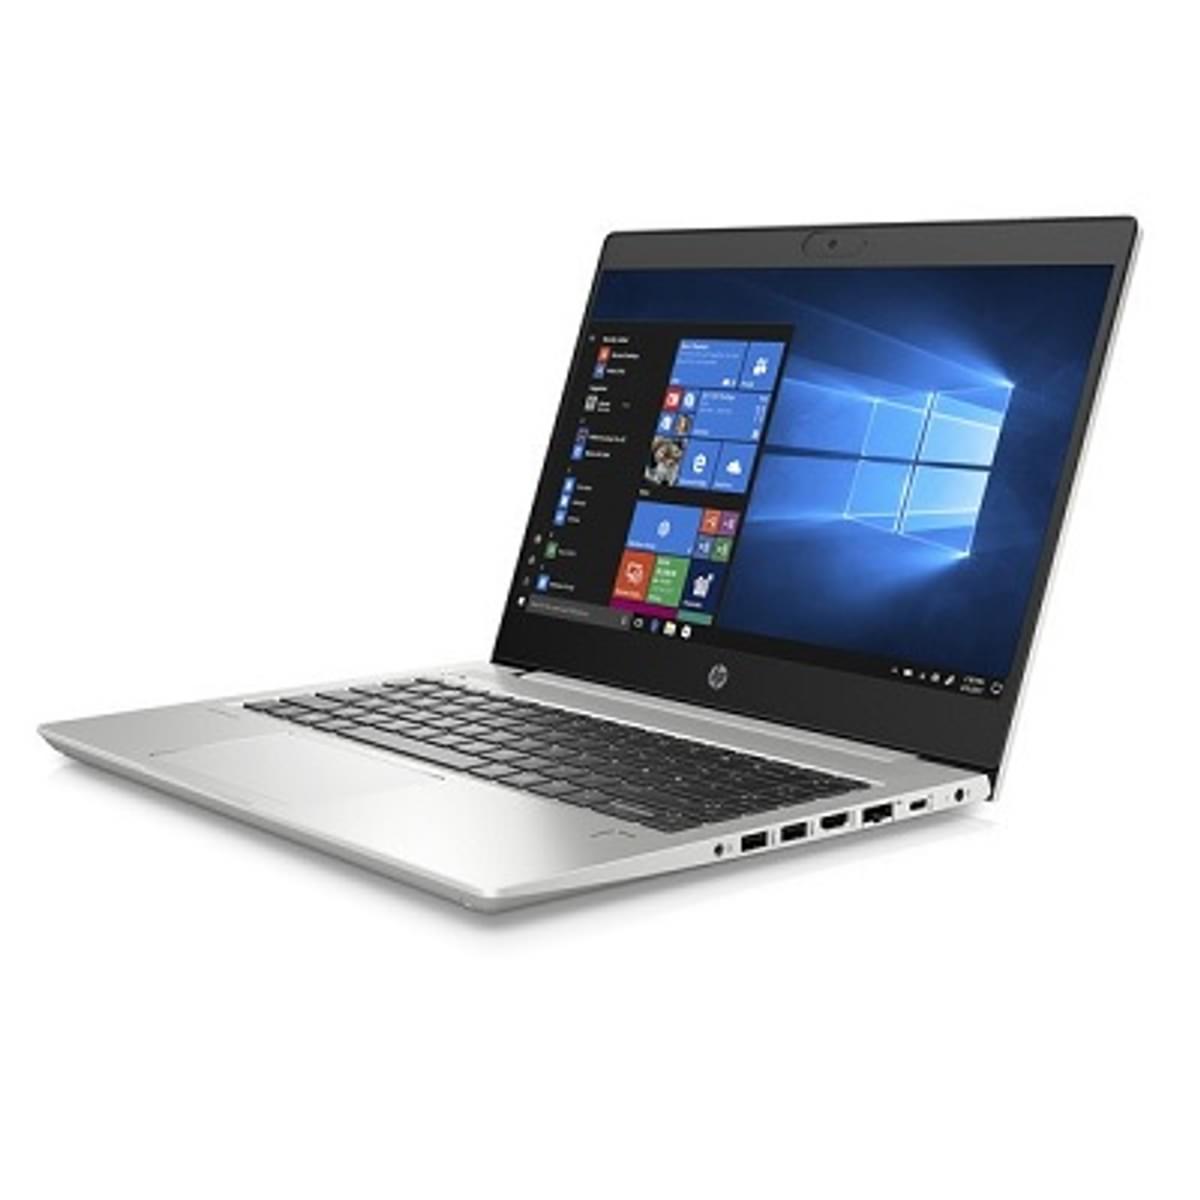 HP introduceert nieuwe zakelijke ProBook notebooks image